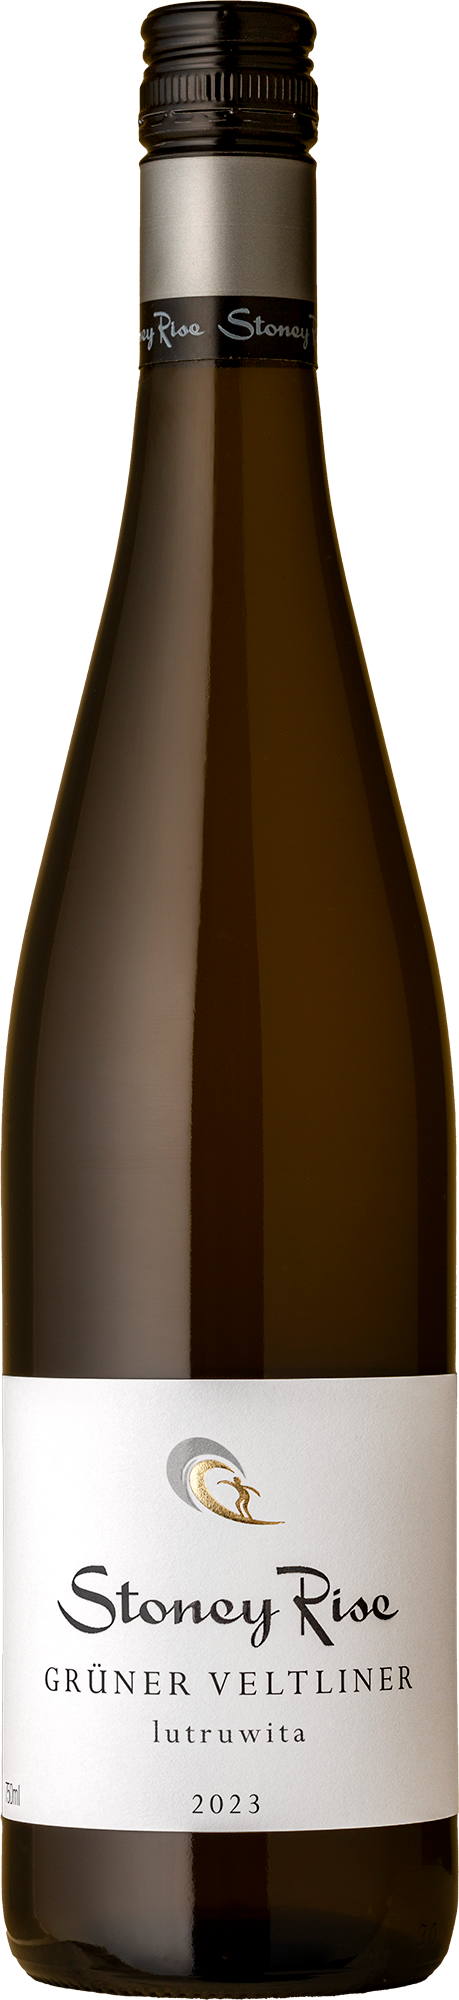 Stoney Rise - Grüner Veltliner 2023 White Wine